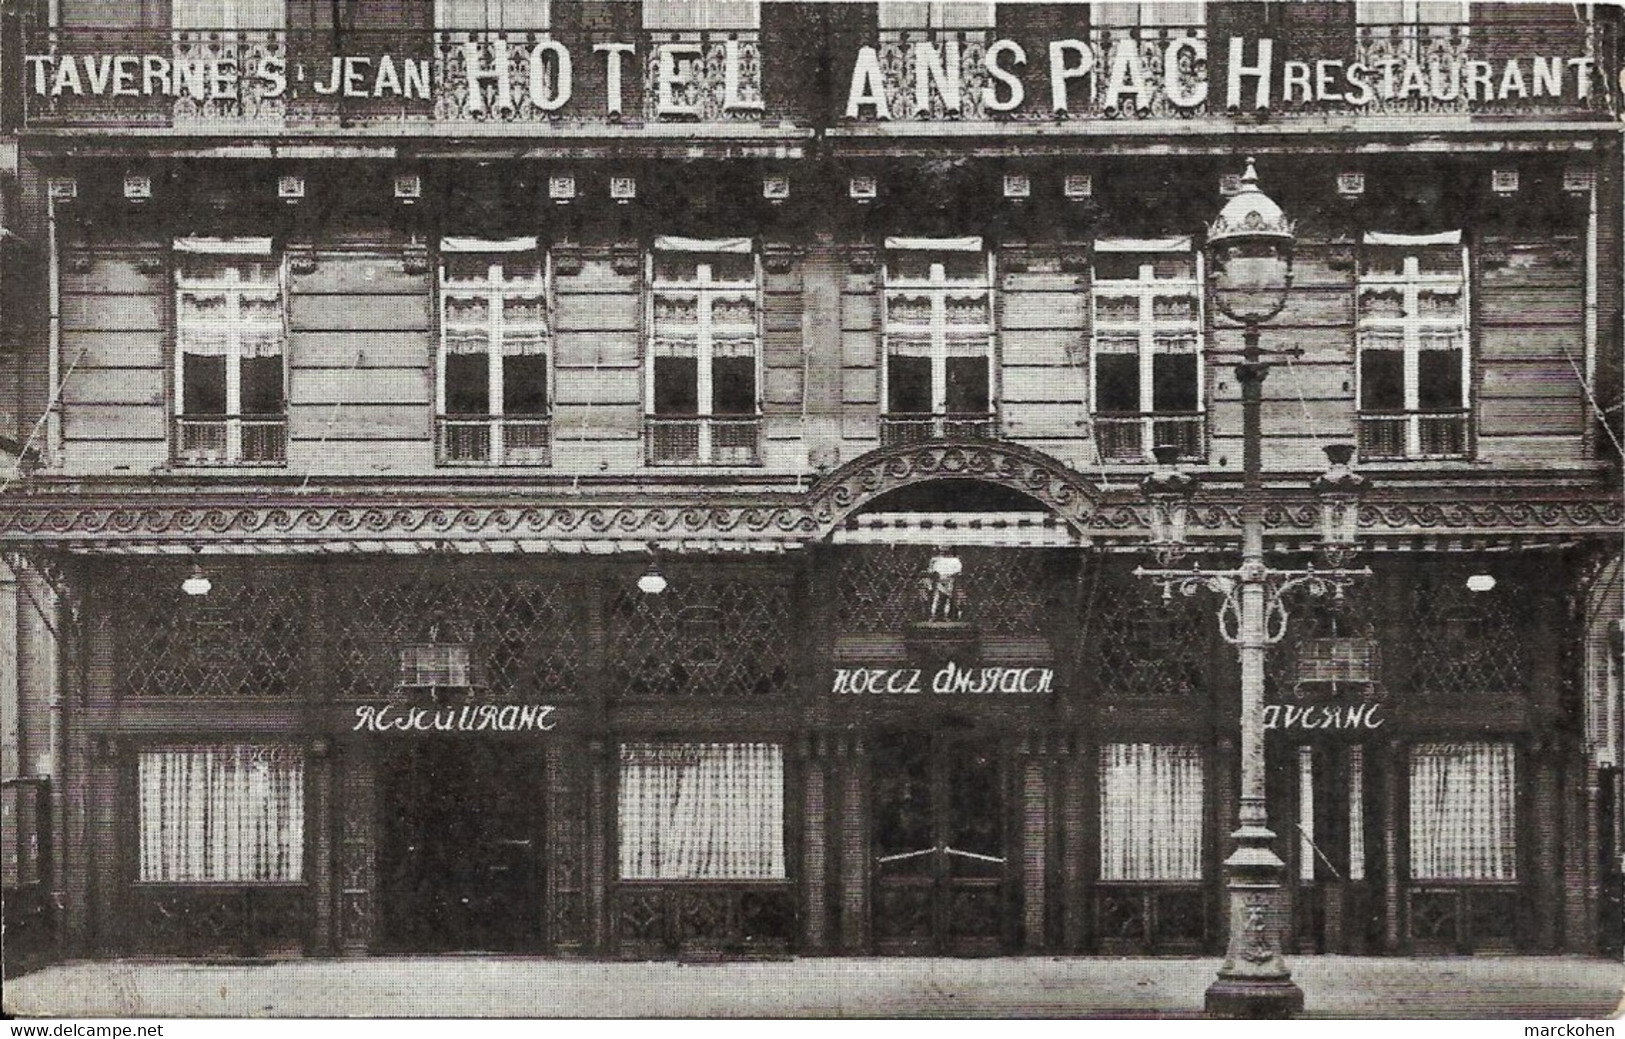 BRUXELLES (1000) : Façade De La Taverne Saint Jean Et Du Grand Hôtel-Restaurant Anspach, Boulevard Anspach. Cliché Rare. - Cafés, Hôtels, Restaurants